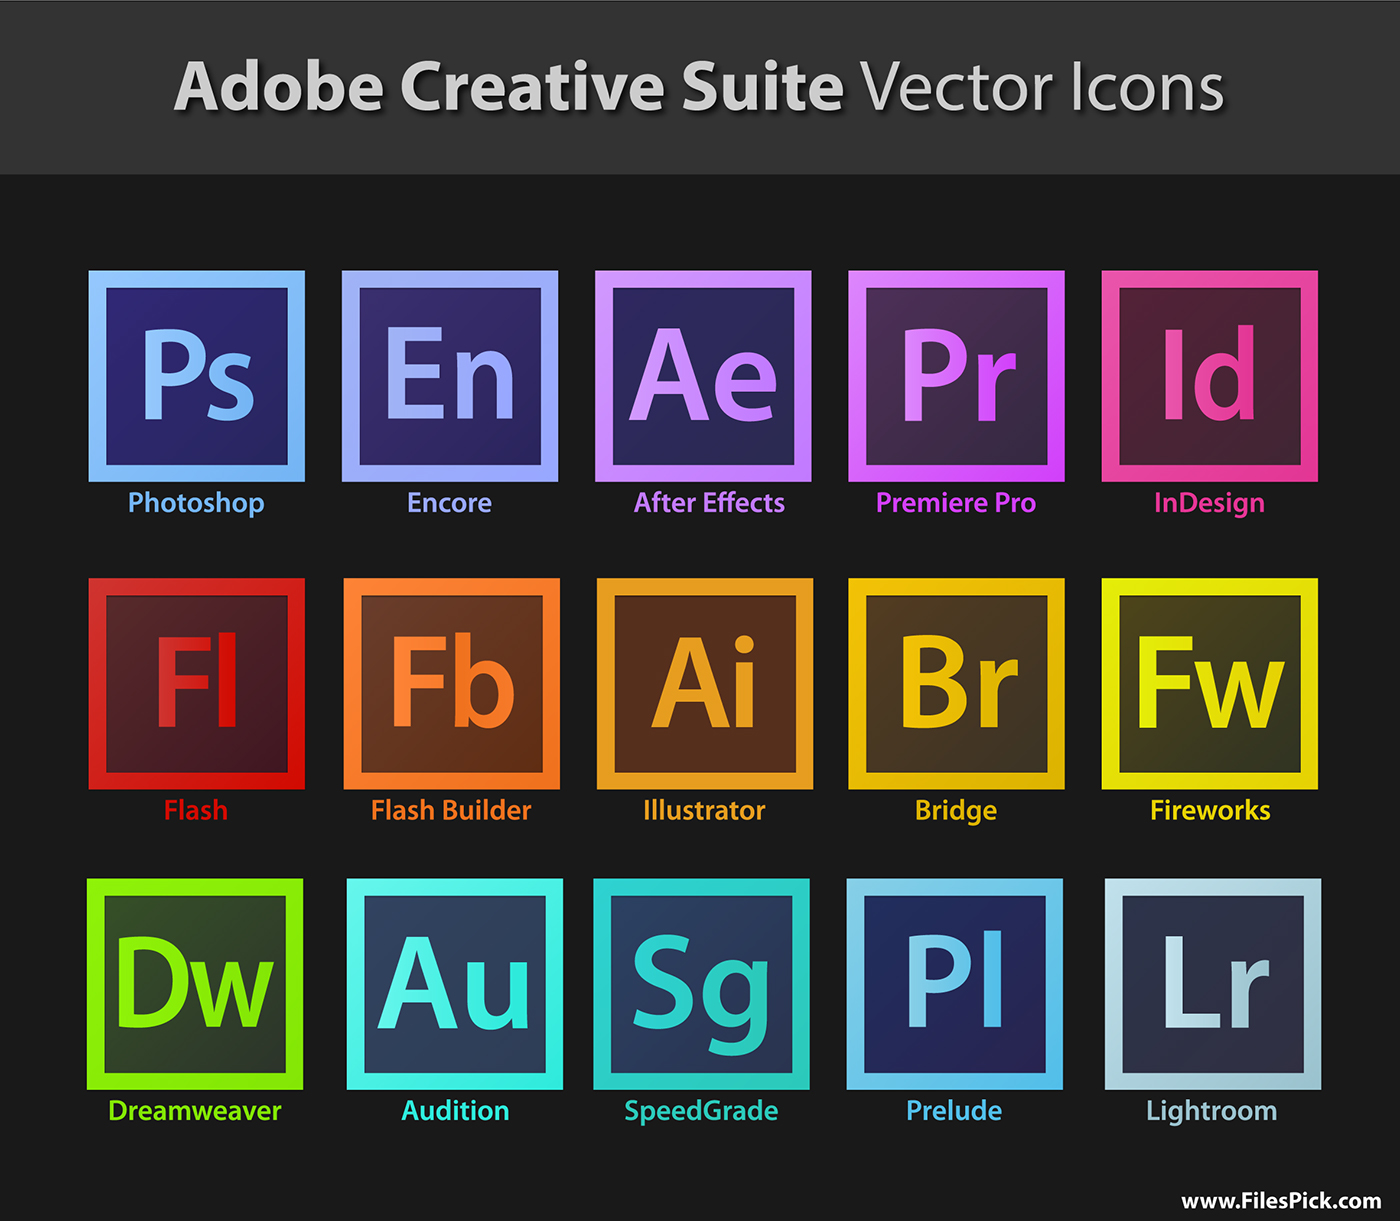 Tabla De Diferencias Entre Versiones De Adobe Creativ - vrogue.co